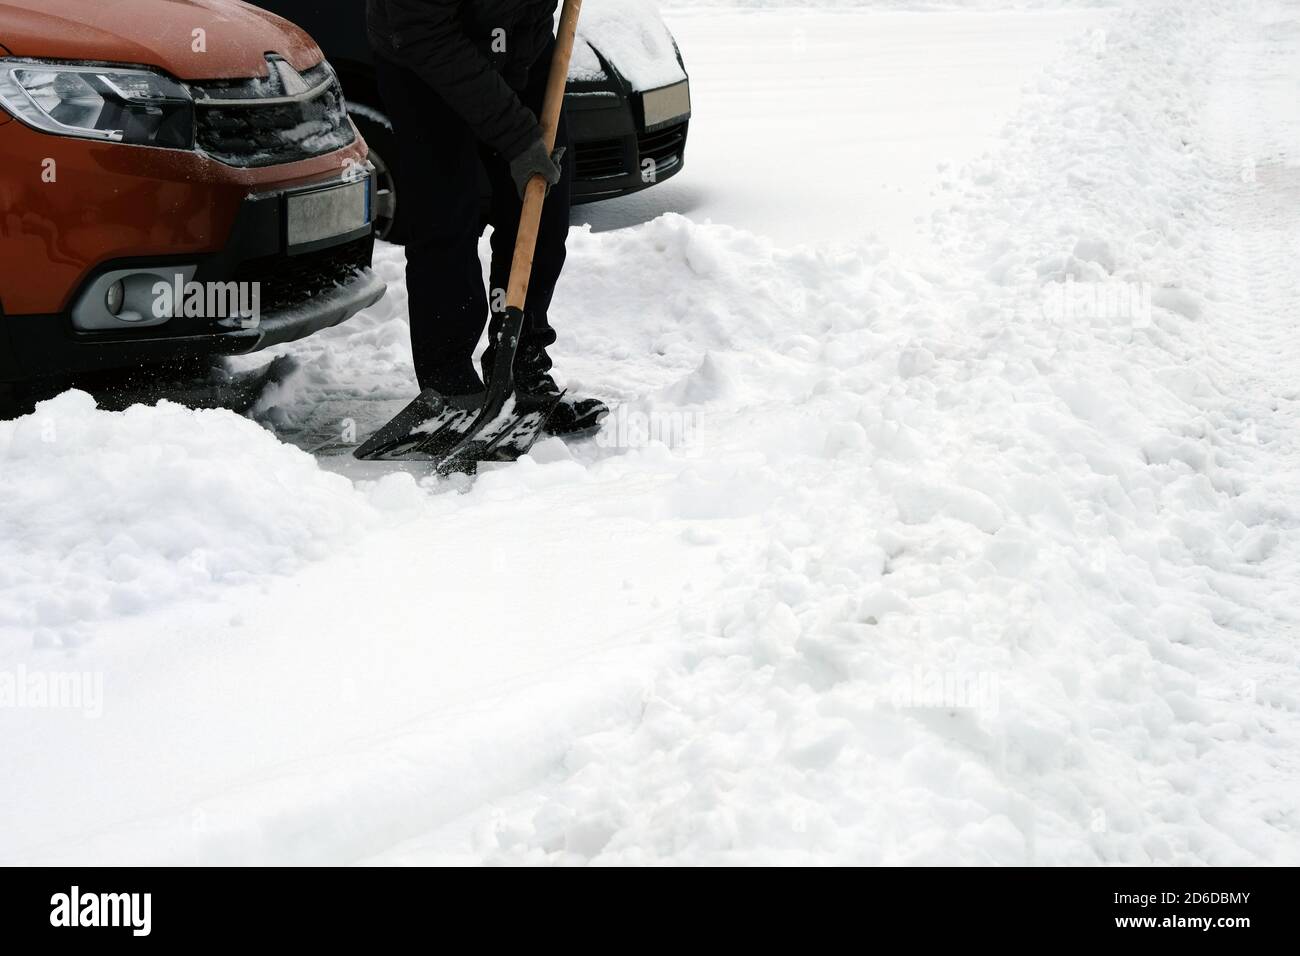 Pelle en main. Un homme avec une pelle élimine la neige autour de la voiture dans le stationnement en hiver après la chute de neige. Problèmes d'hiver des conducteurs de voiture. Banque D'Images